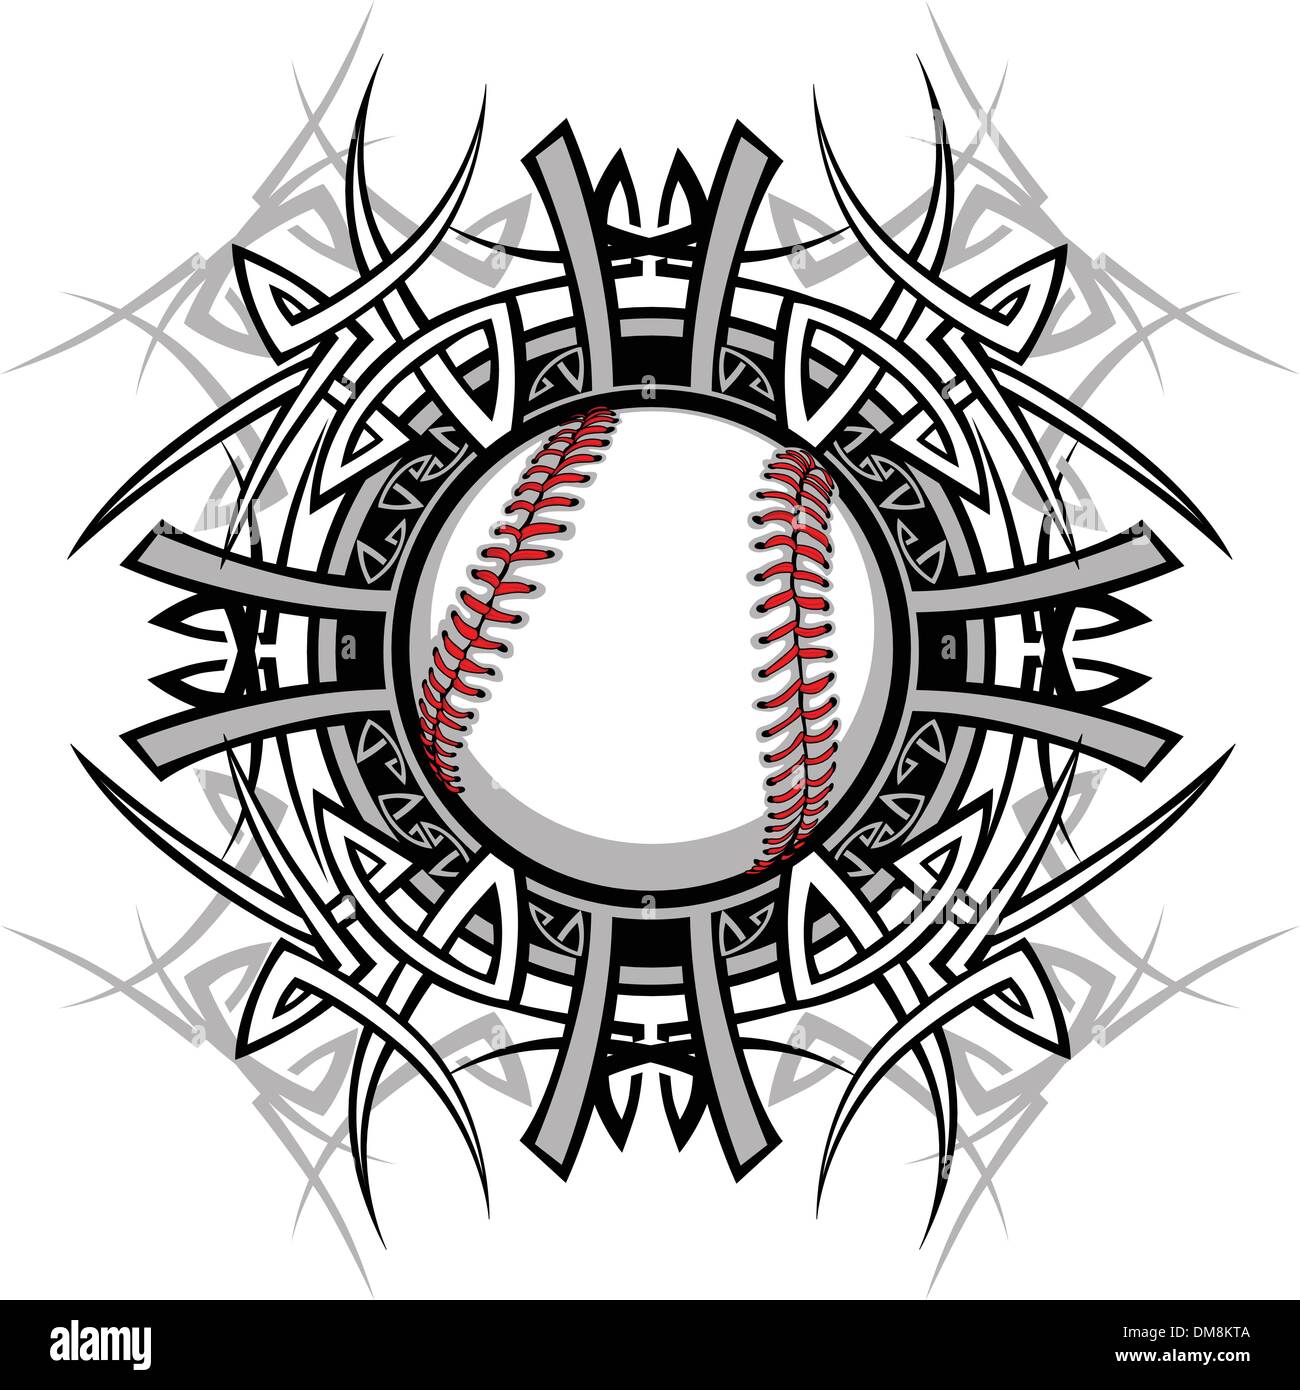 Baseball Softball Tribal Graphic Image Stock Vector